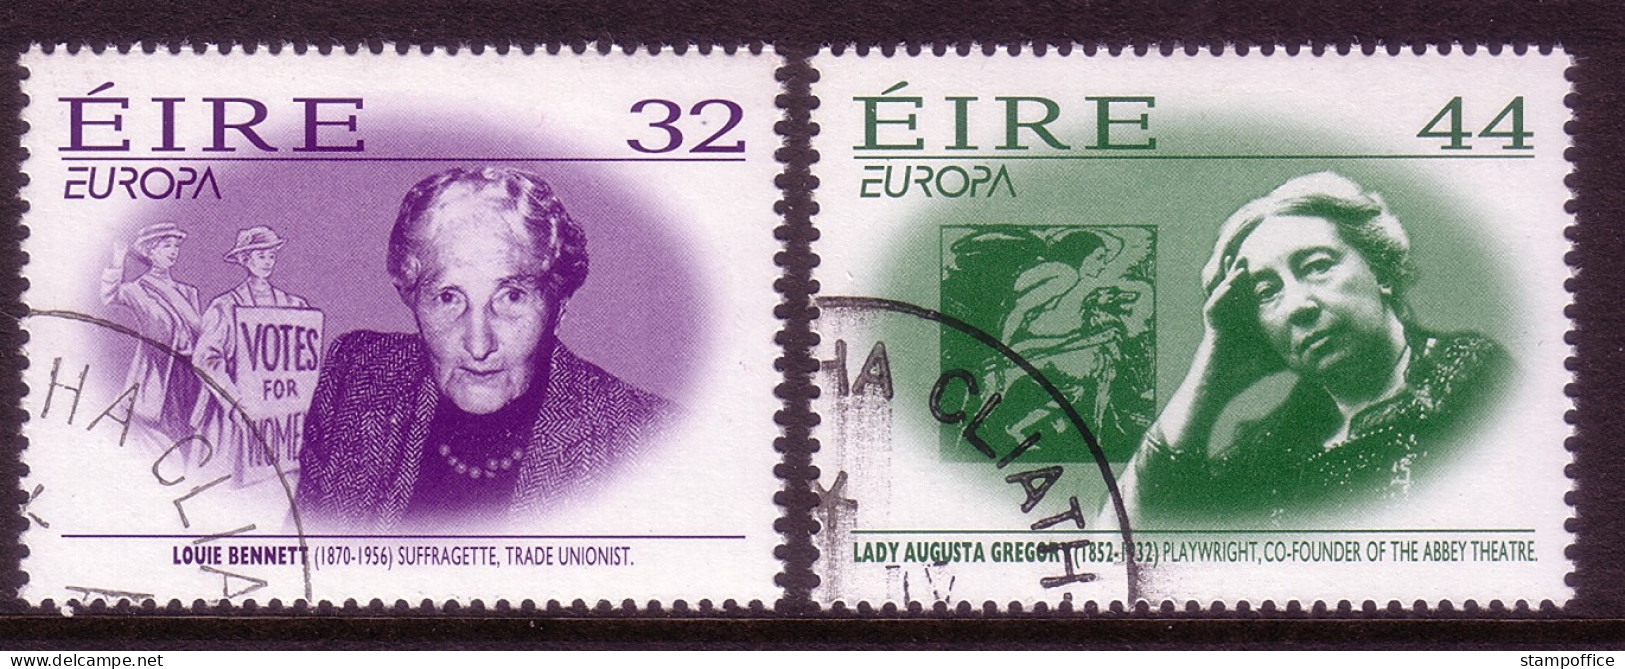 IRLAND MI-NR. 940-941 GESTEMPELT(USED) EUROPA 1996 BERÜHMTE FRAUEN - 1996